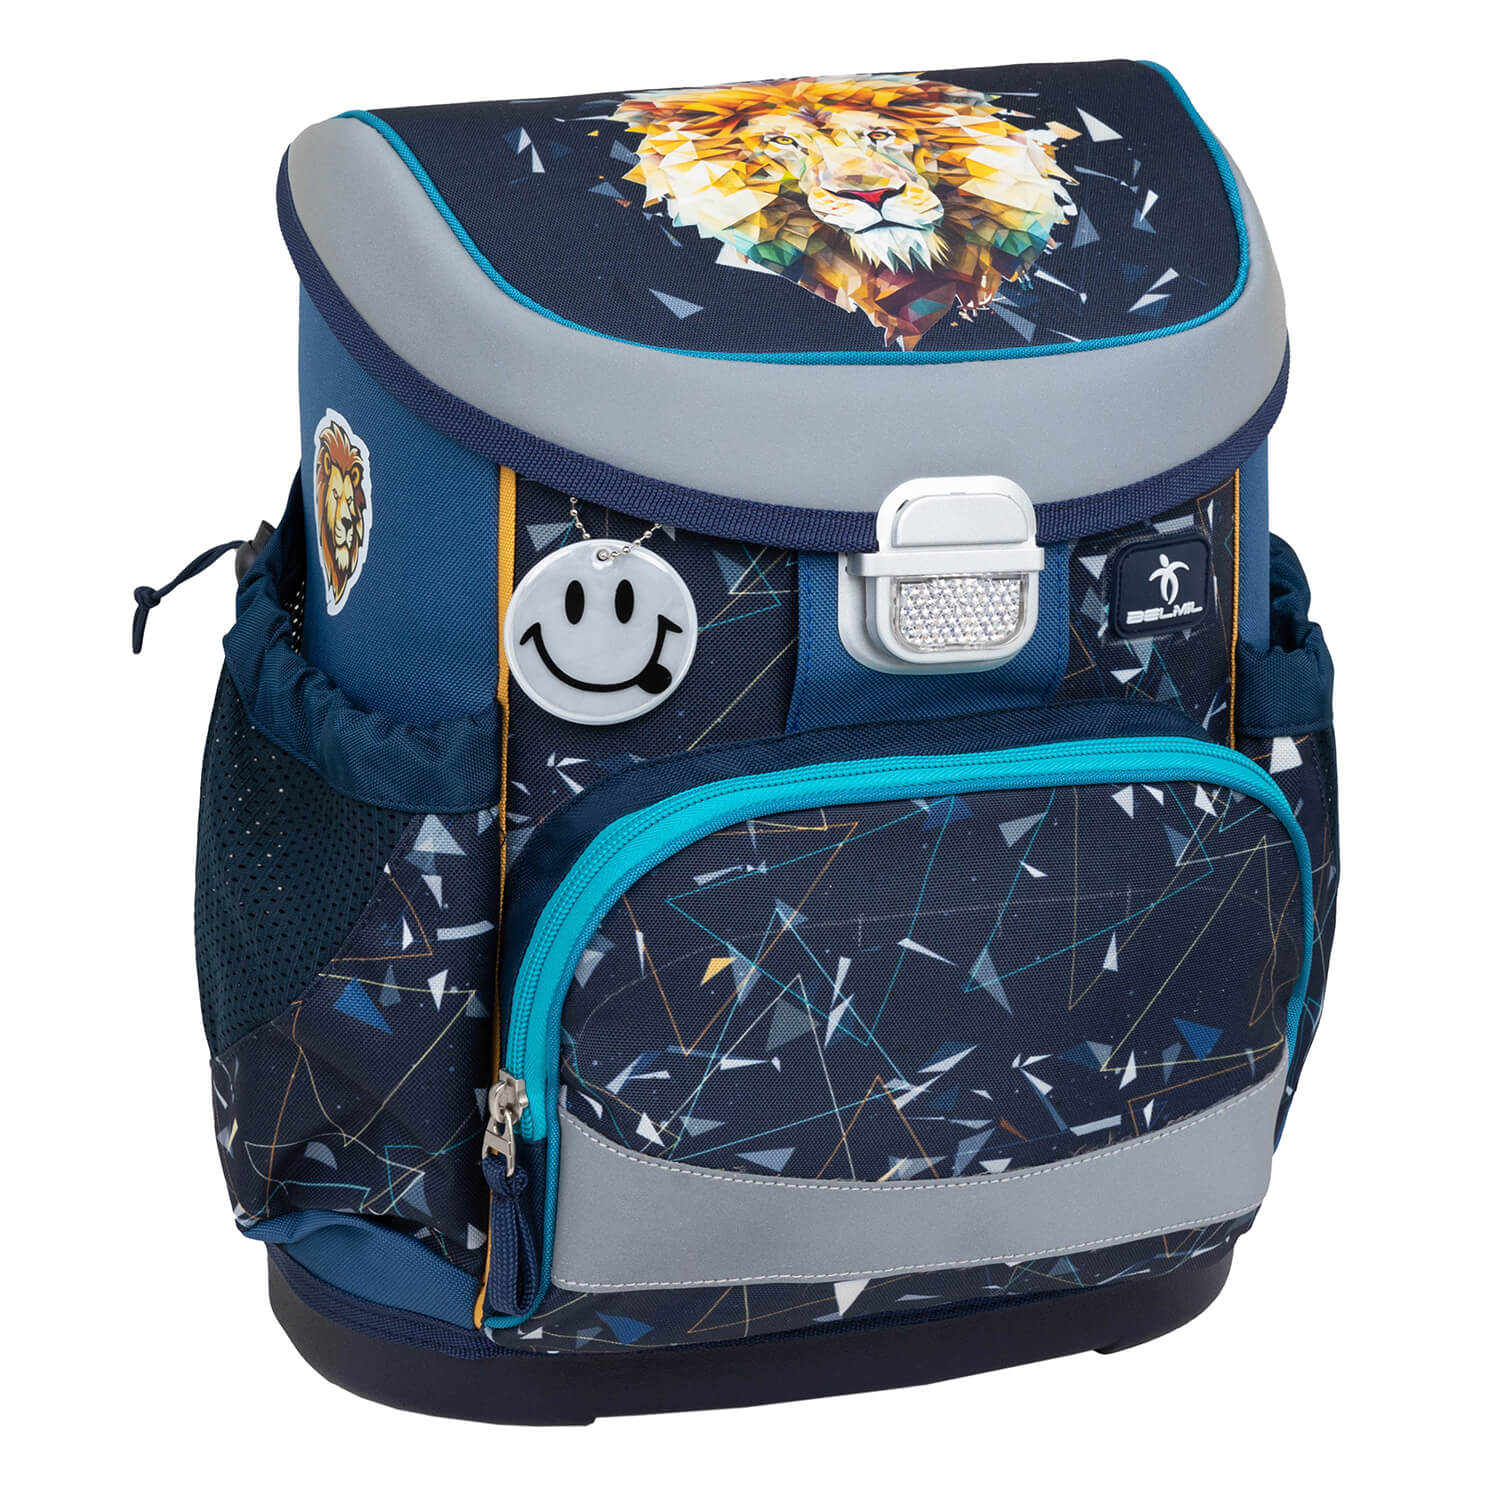 Mini-Fit Lion schoolbag set 4 pcs